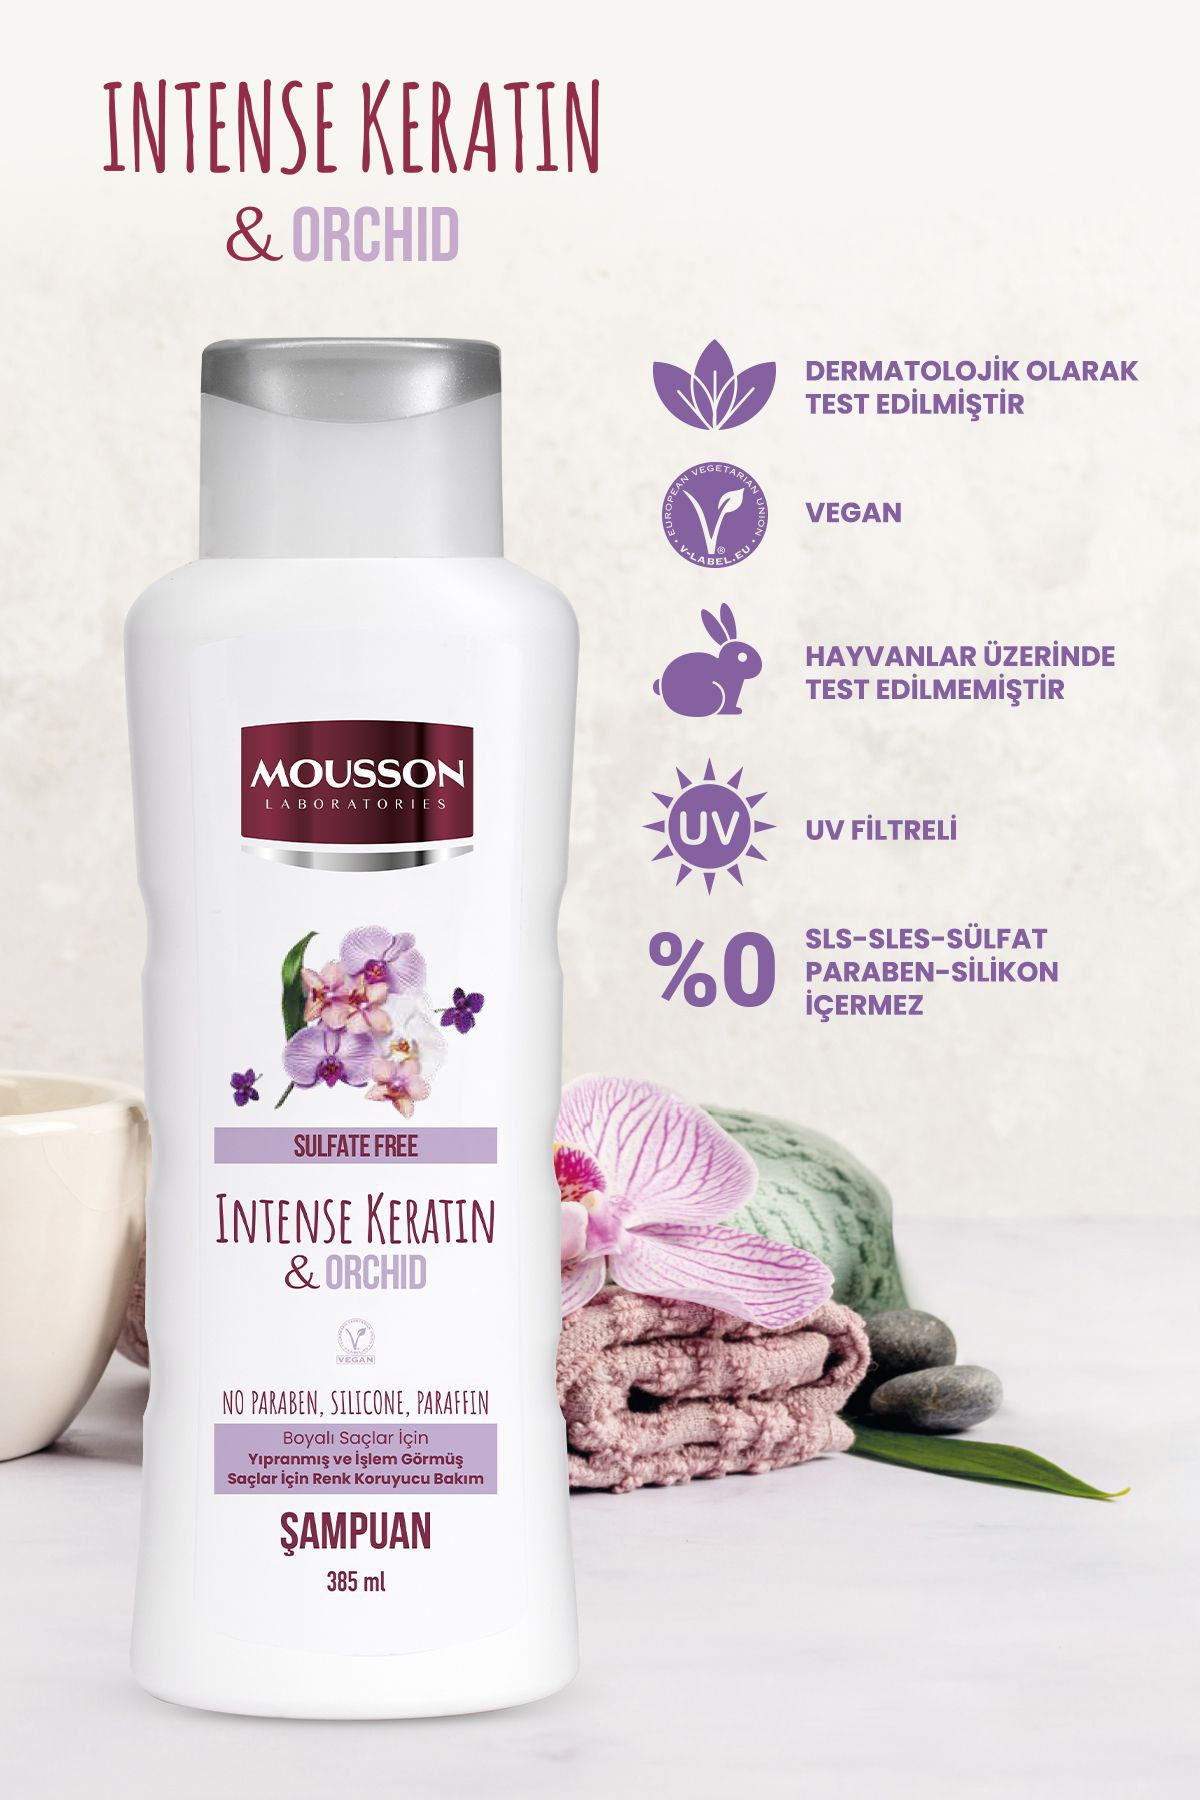 Mousson Yoğun Keratin & Orkide Içeren Renk Koruyucu Ve Yıpranmayı Onaran Sülfatsız Şampuan 385 ml